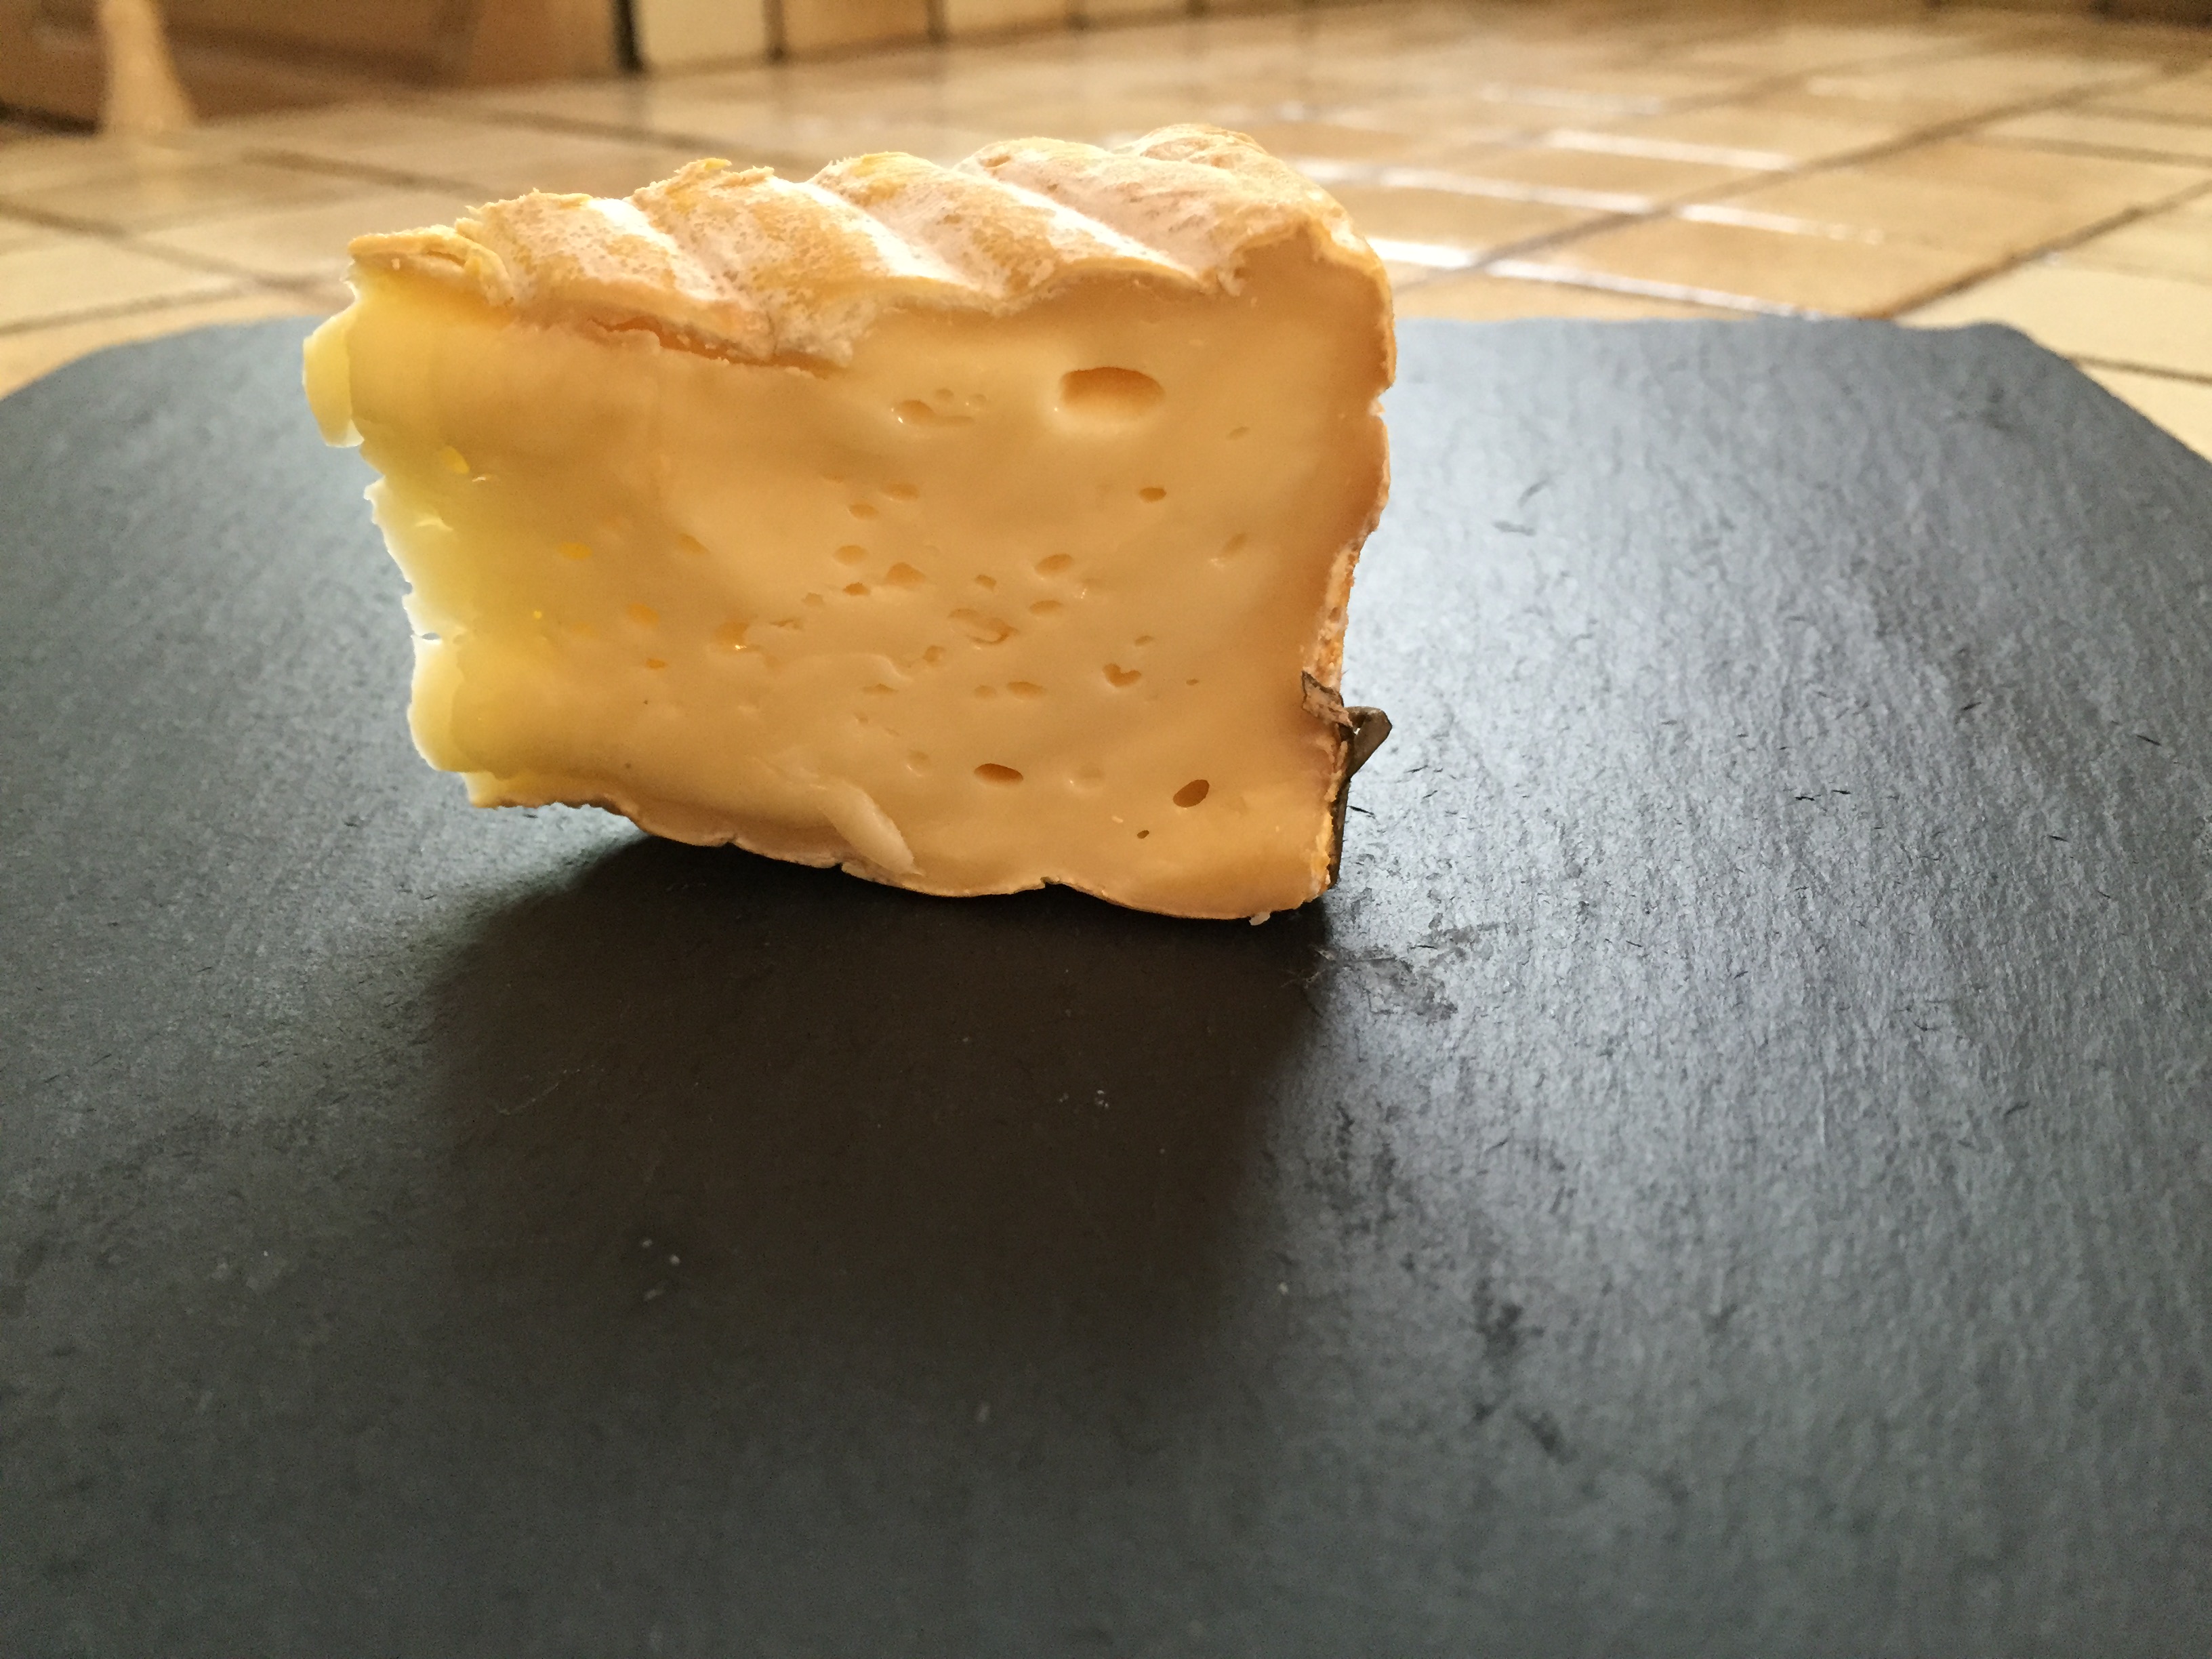 Livarot cheese